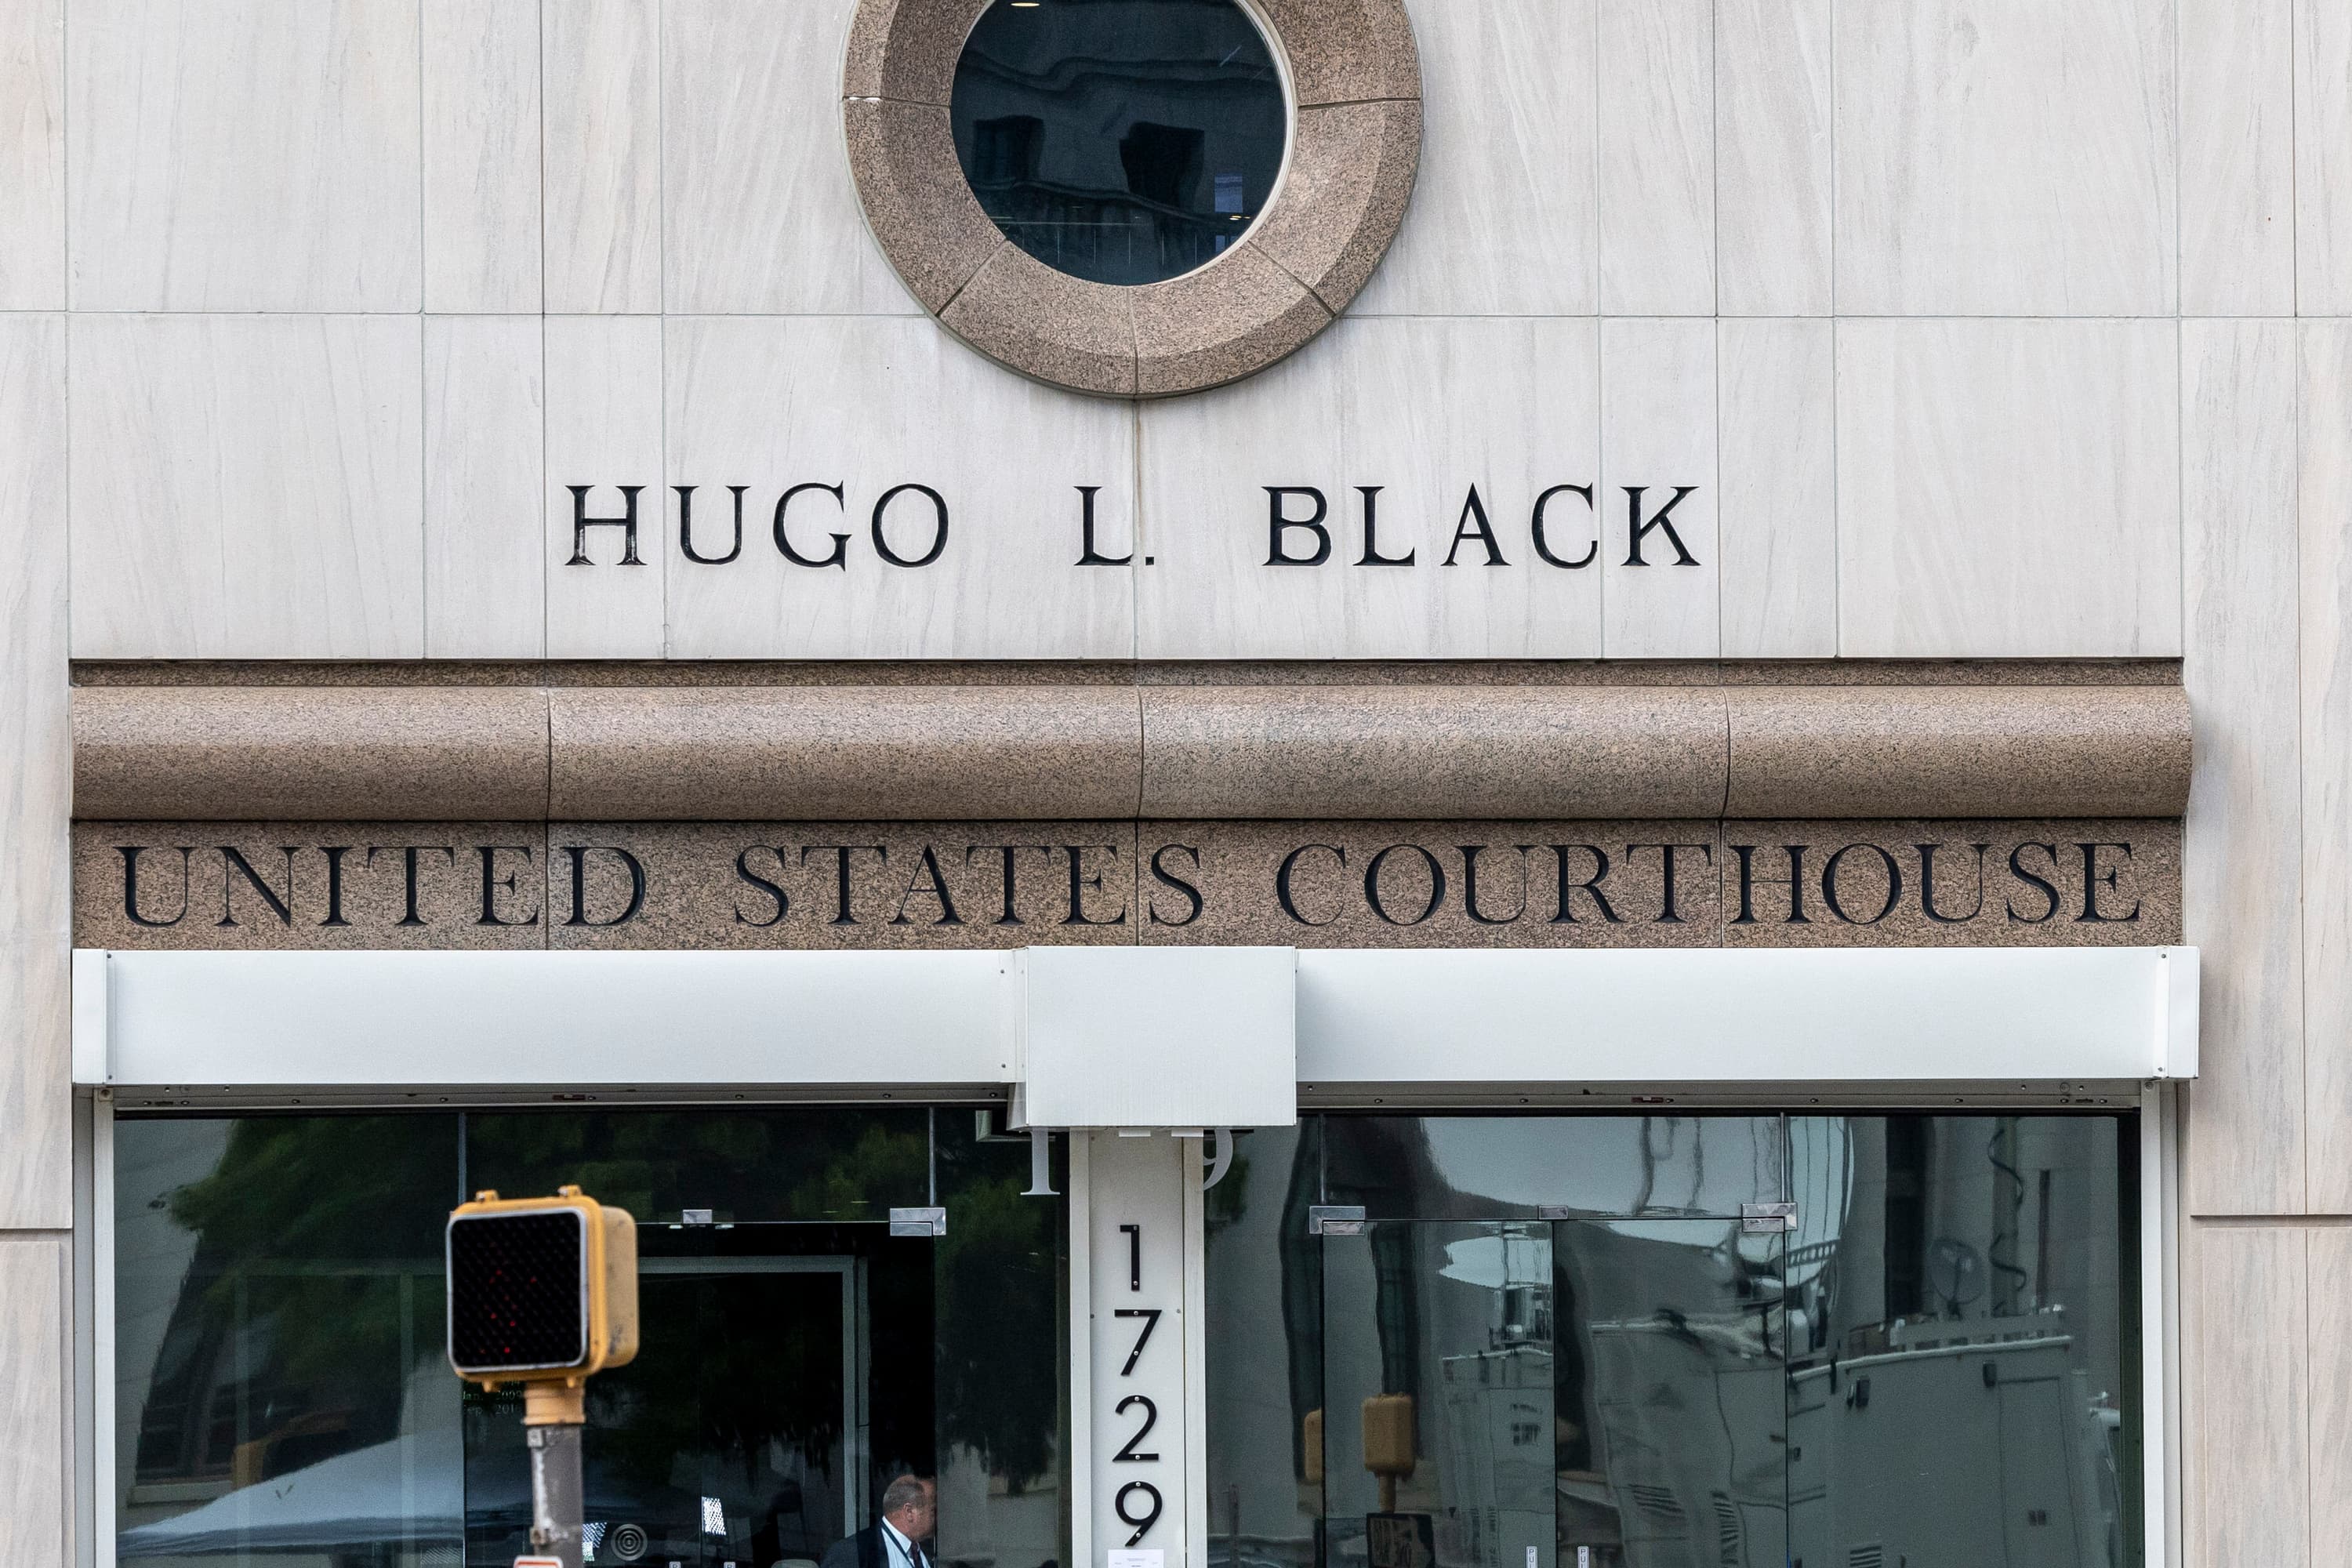 Hugo L. Black United States Courthouse, Birmingham, Ala.